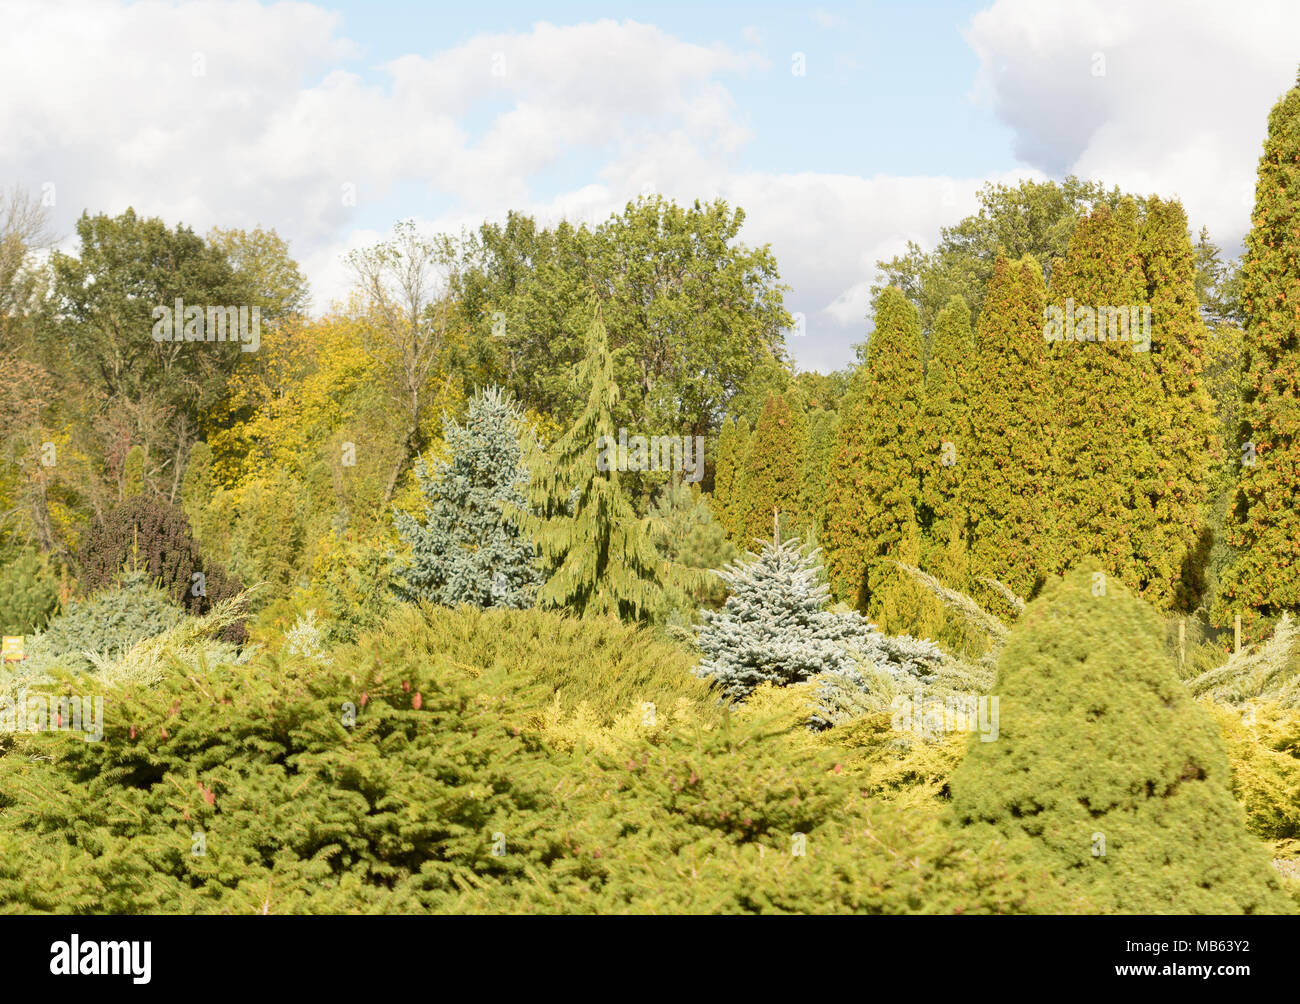 Verschiedene Rassen von Nadelbäumen auf künstlichen Hügeln angebaut. Die Niederlassung der Botanische Garten von Keiv, Ukraine. Sonnigen Tag im September. Stockfoto